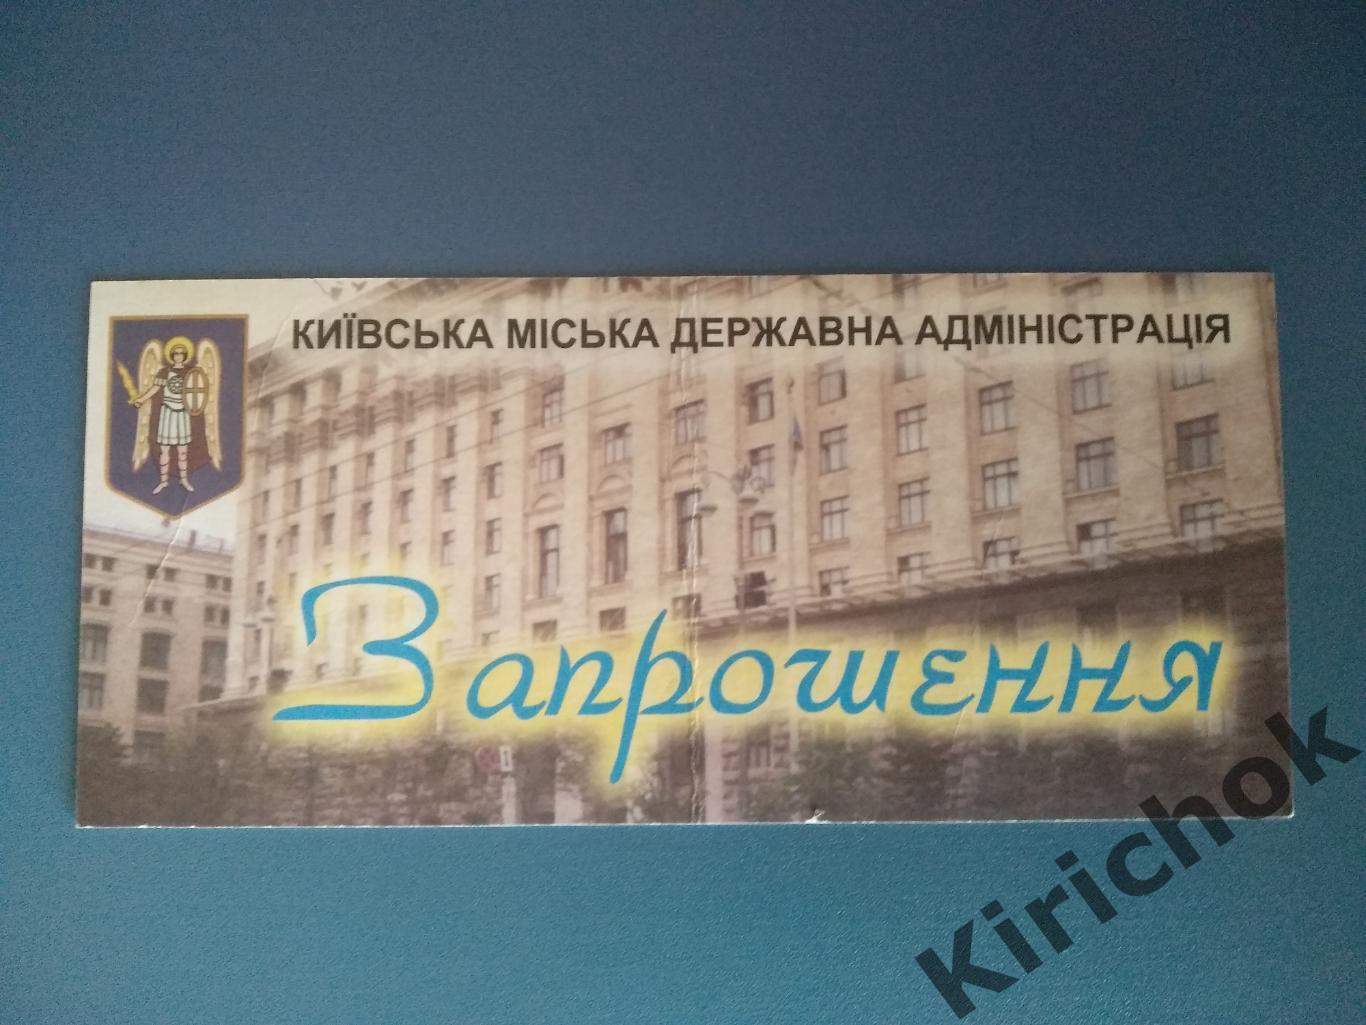 Личный архив Олега Блохина! Приглашение.Независимость Украины. Украина.Киев 2001